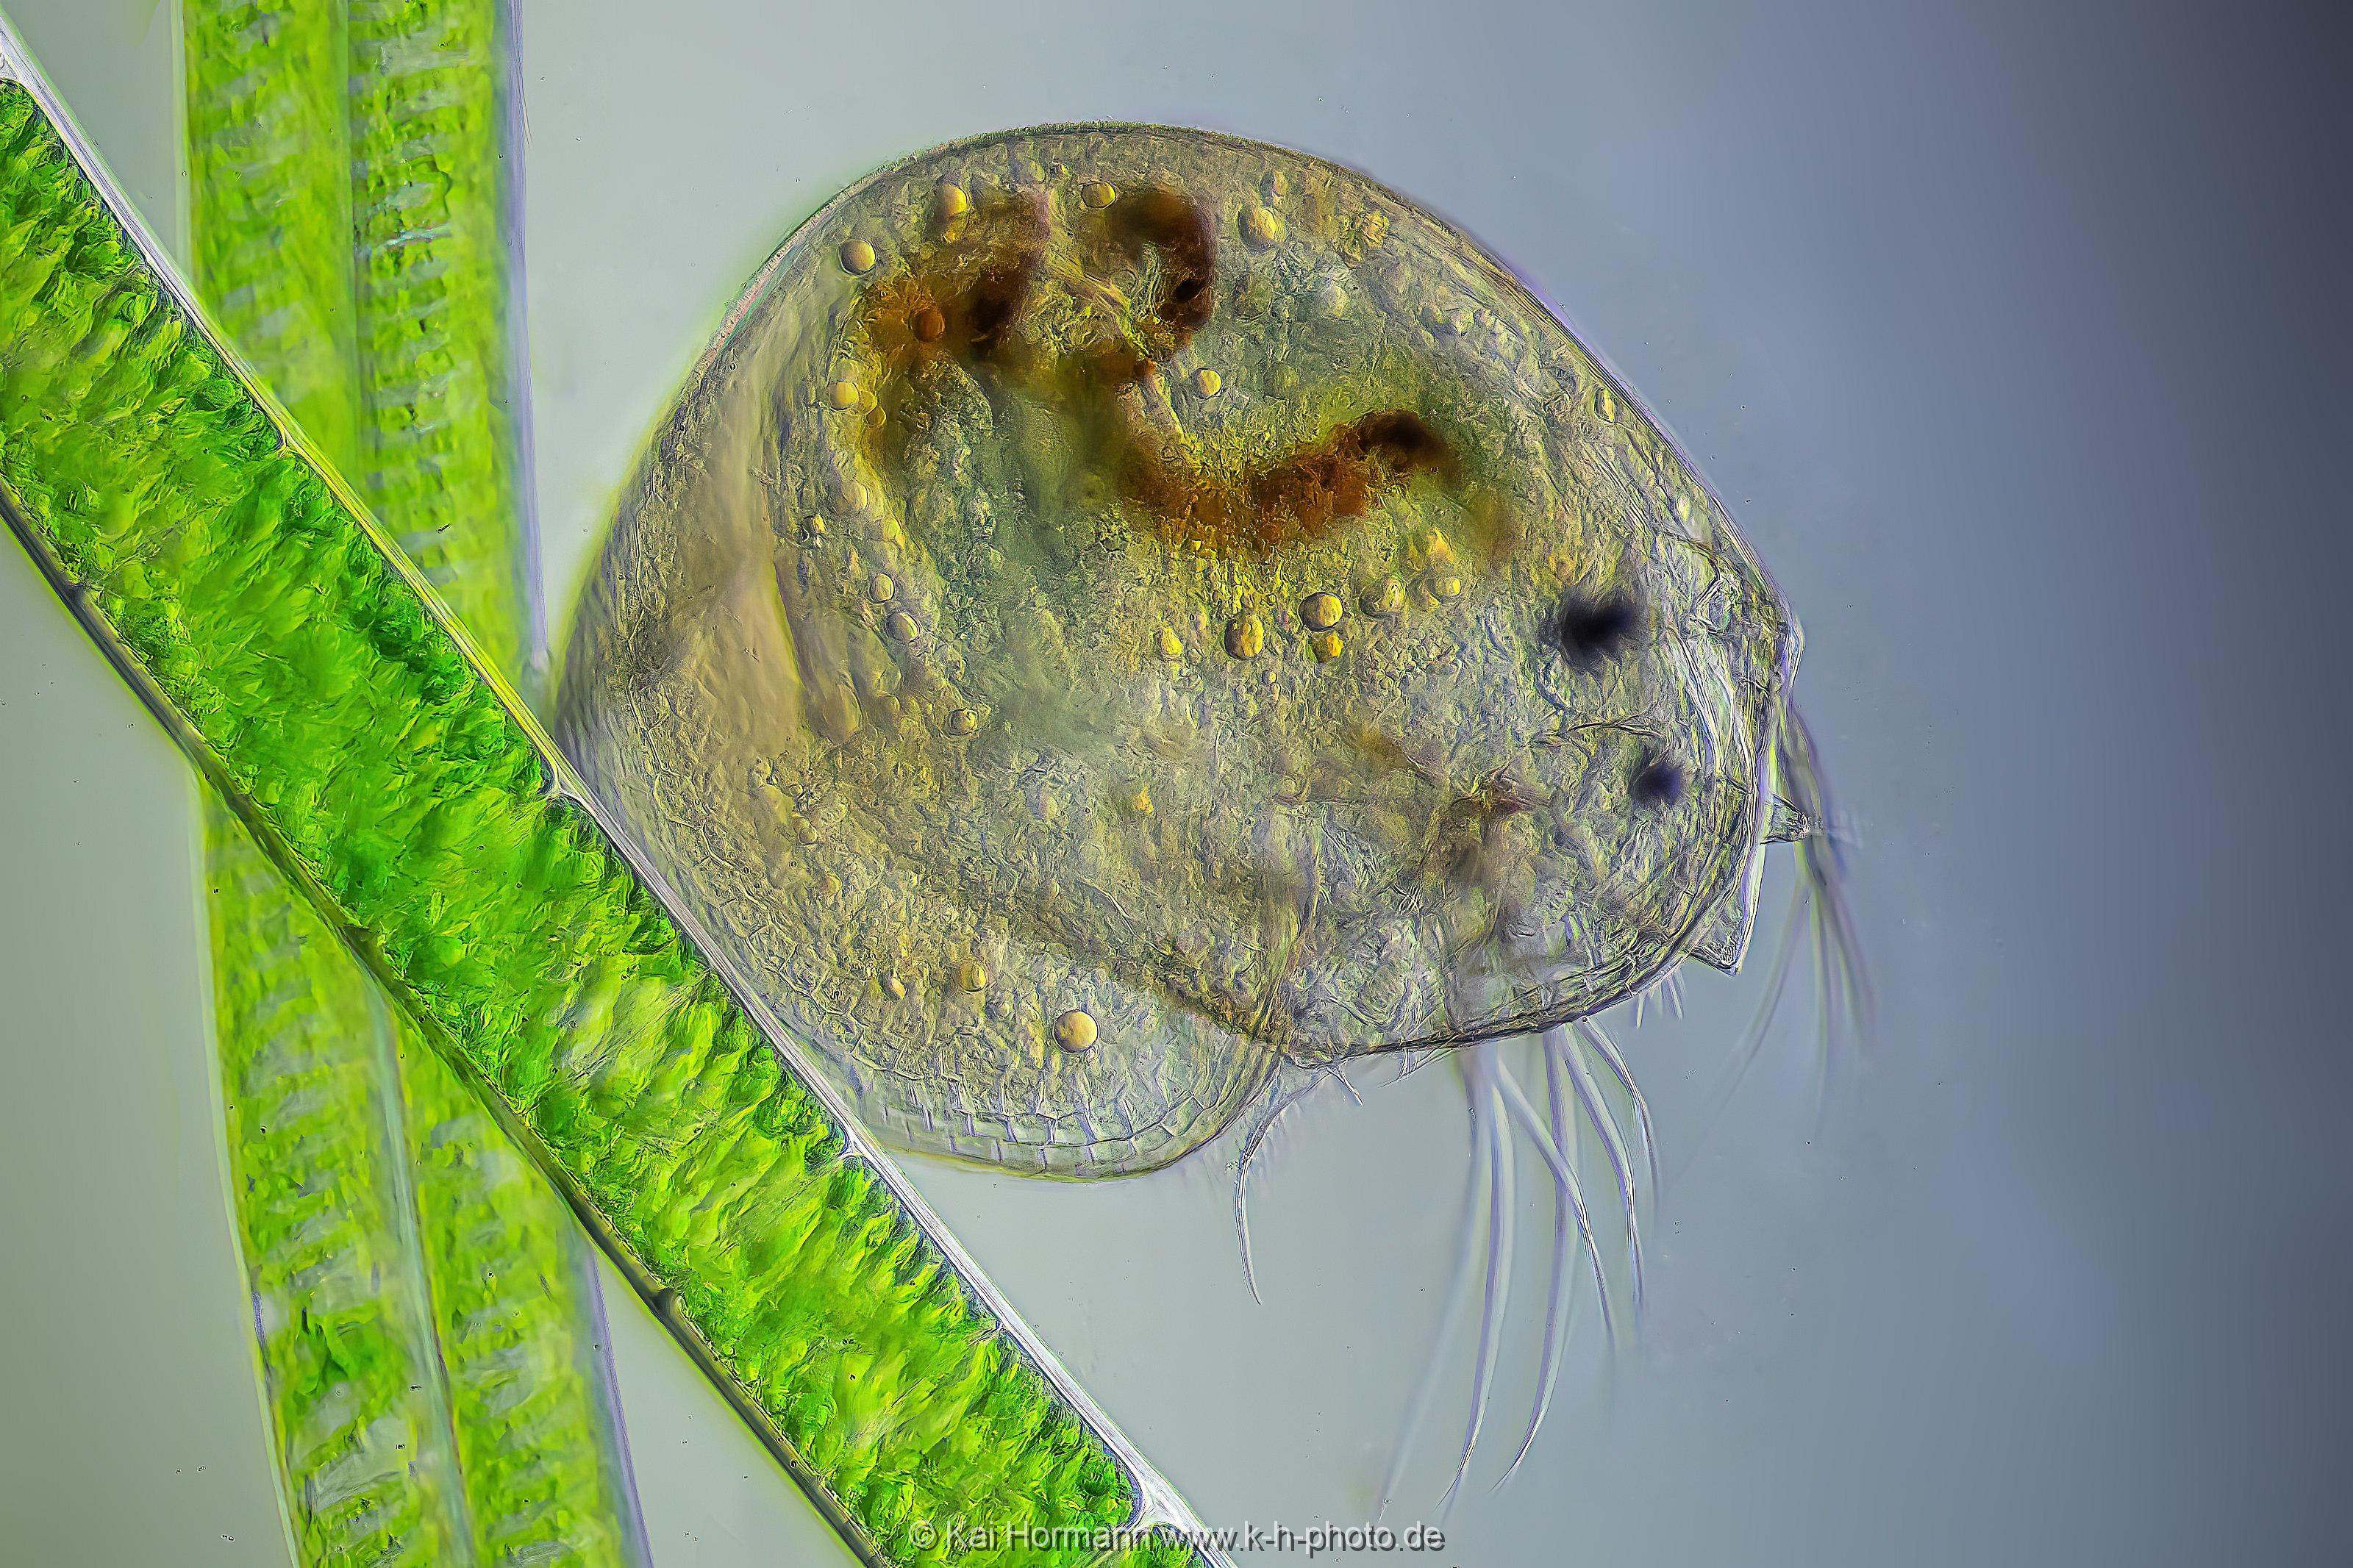 Blattfußkrebs an Fadenalge. Mikrofotografie: Mikroskopische Aufnahmen von Einzellern, Algen und Kleinstlebewesen.